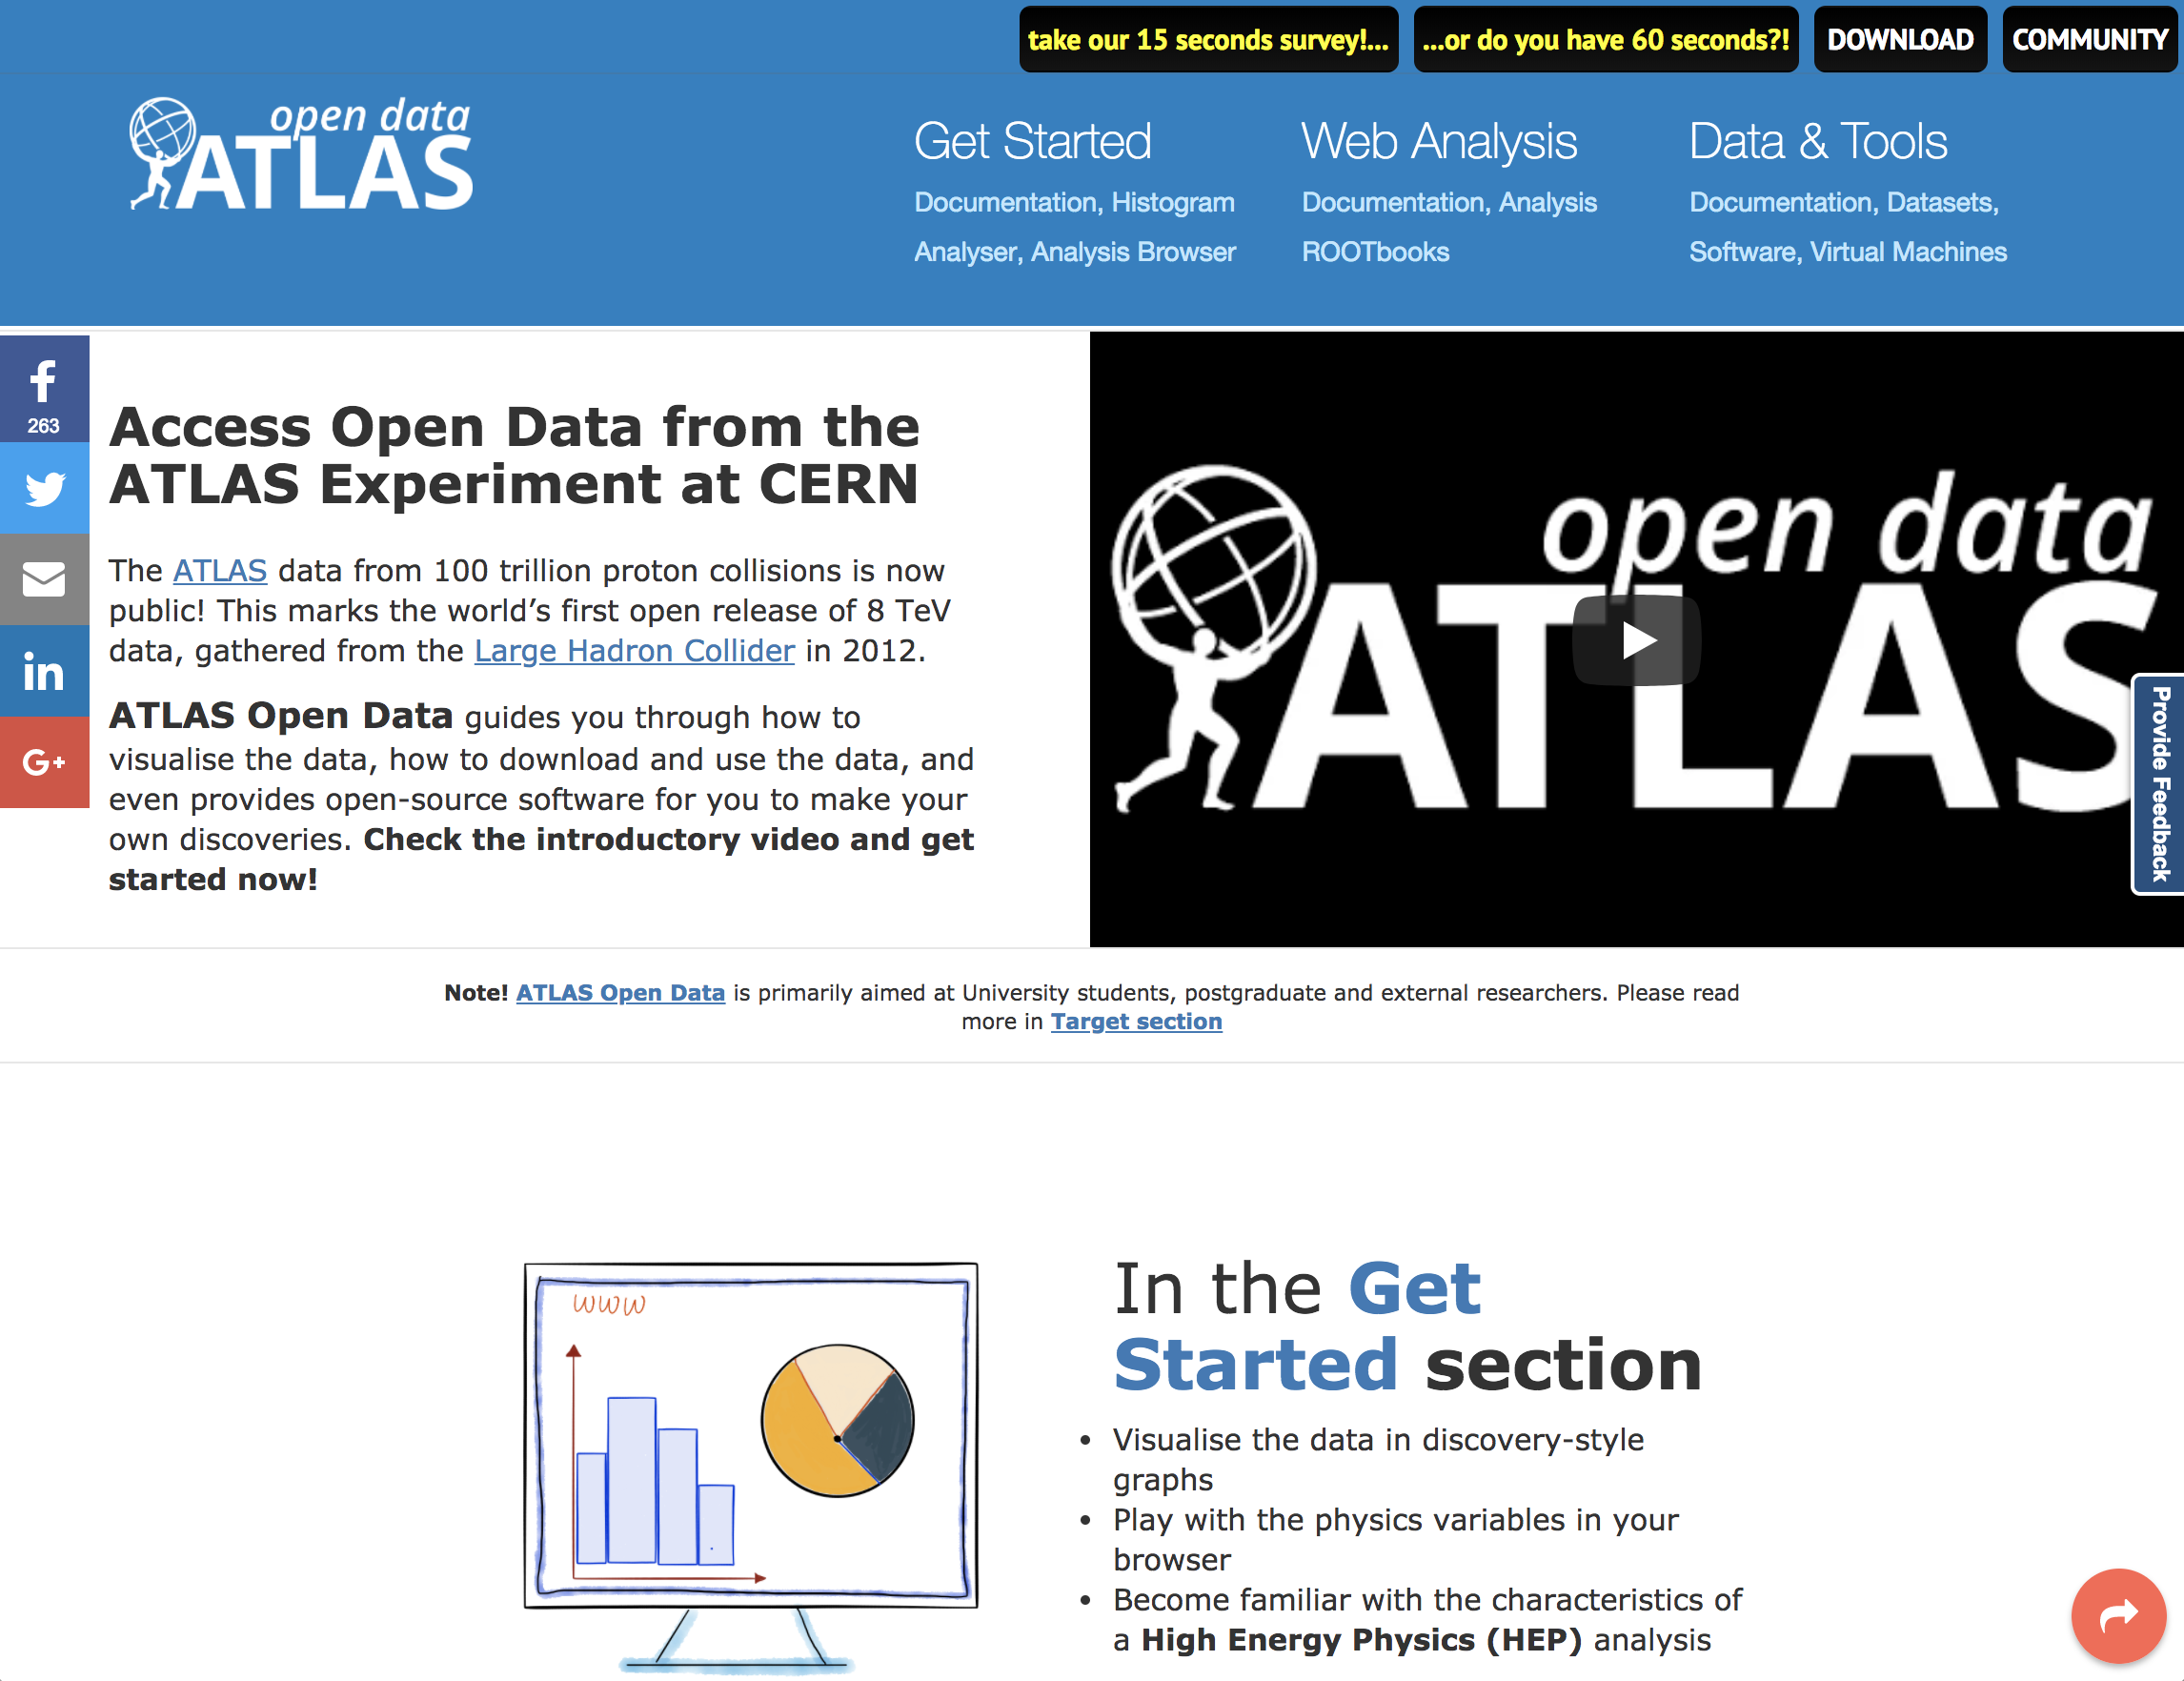 ATLAS Open Data home